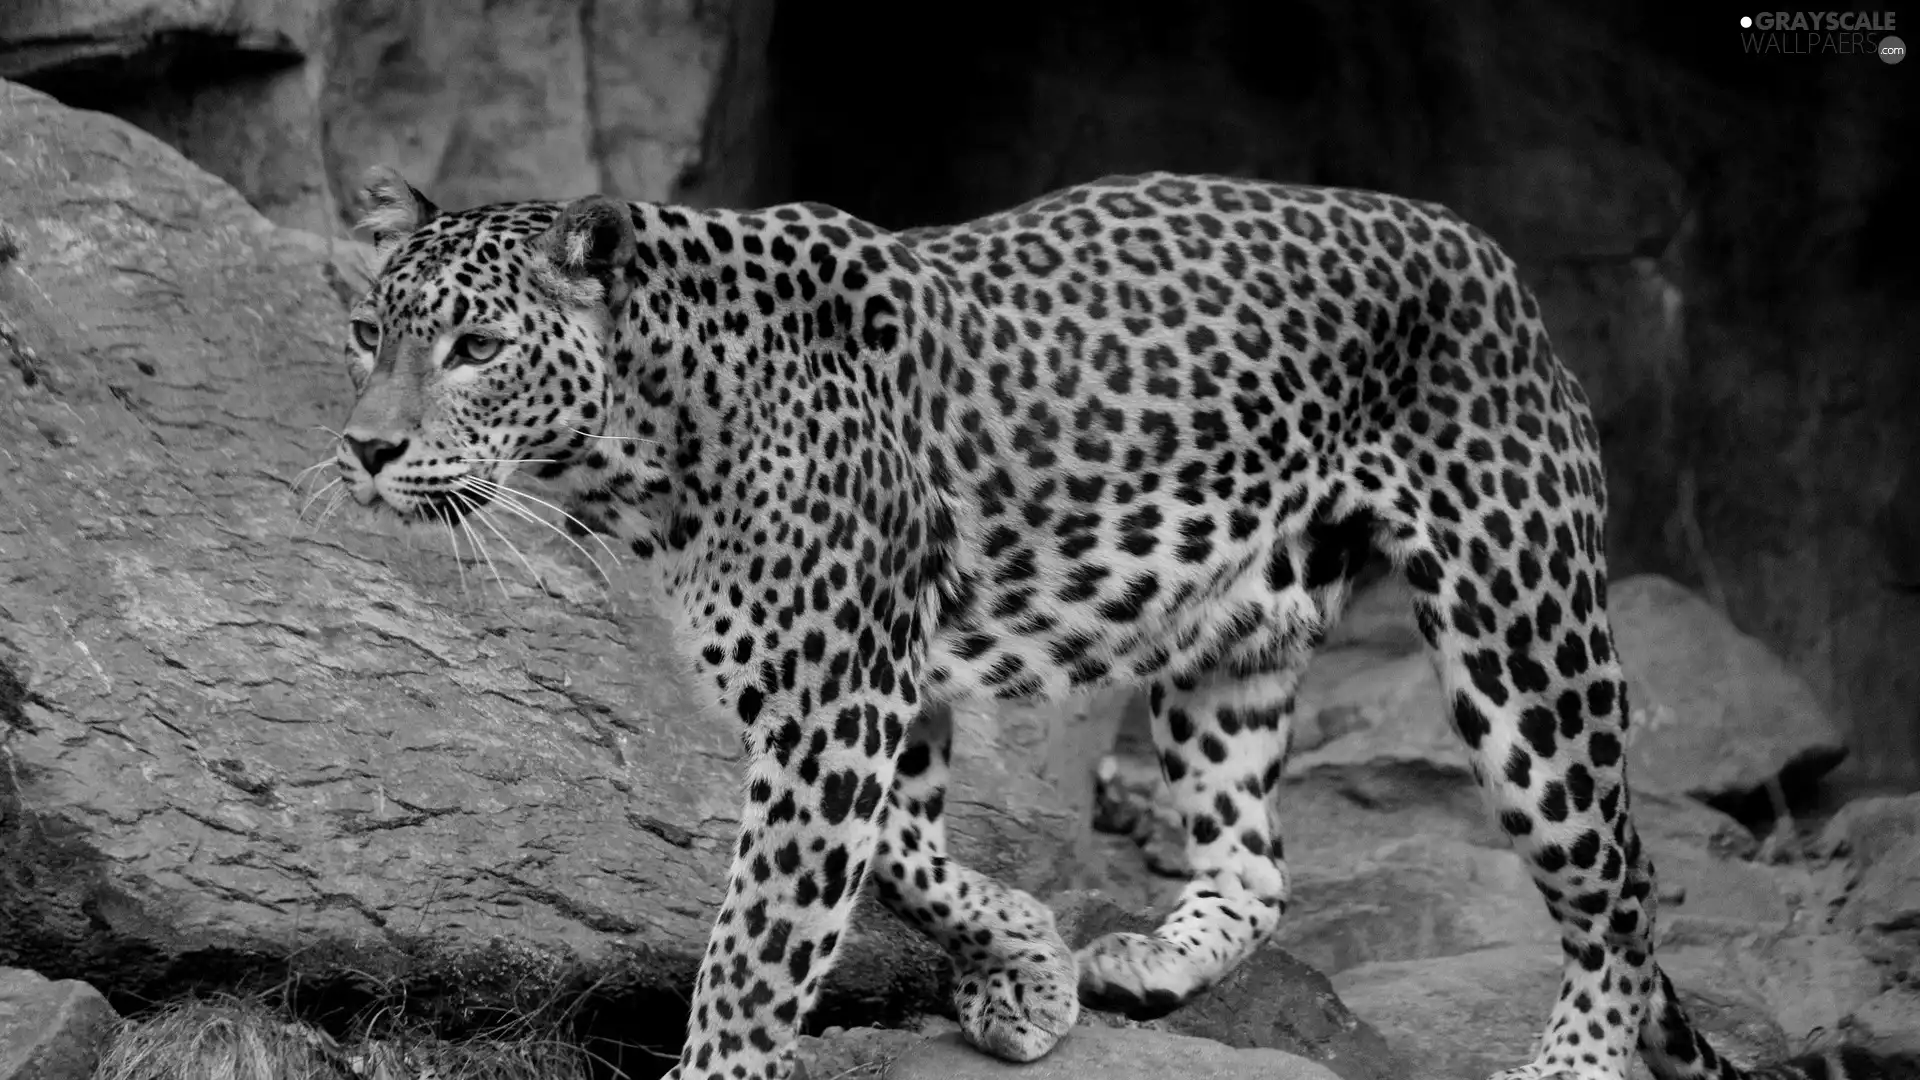 Leopards, Rocks